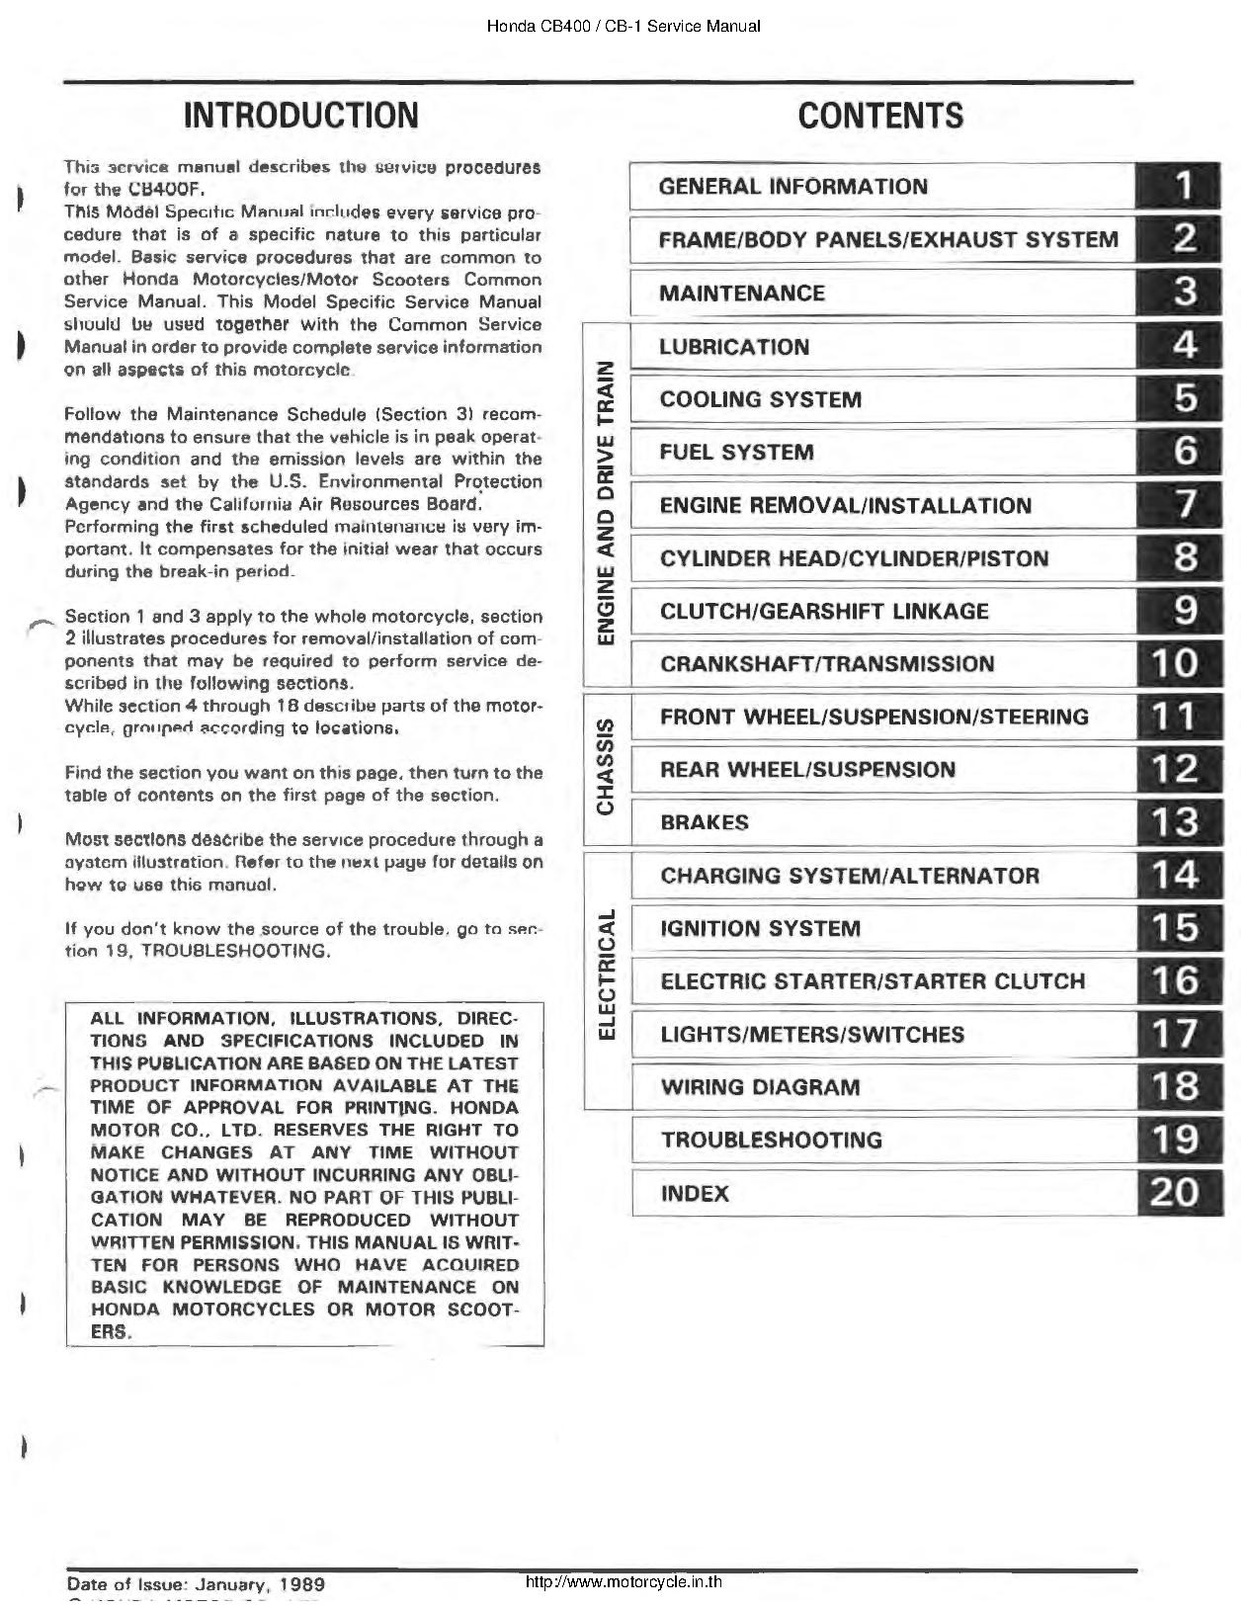 File:Honda CB400F CB-1 1989 Service Manual English.pdf